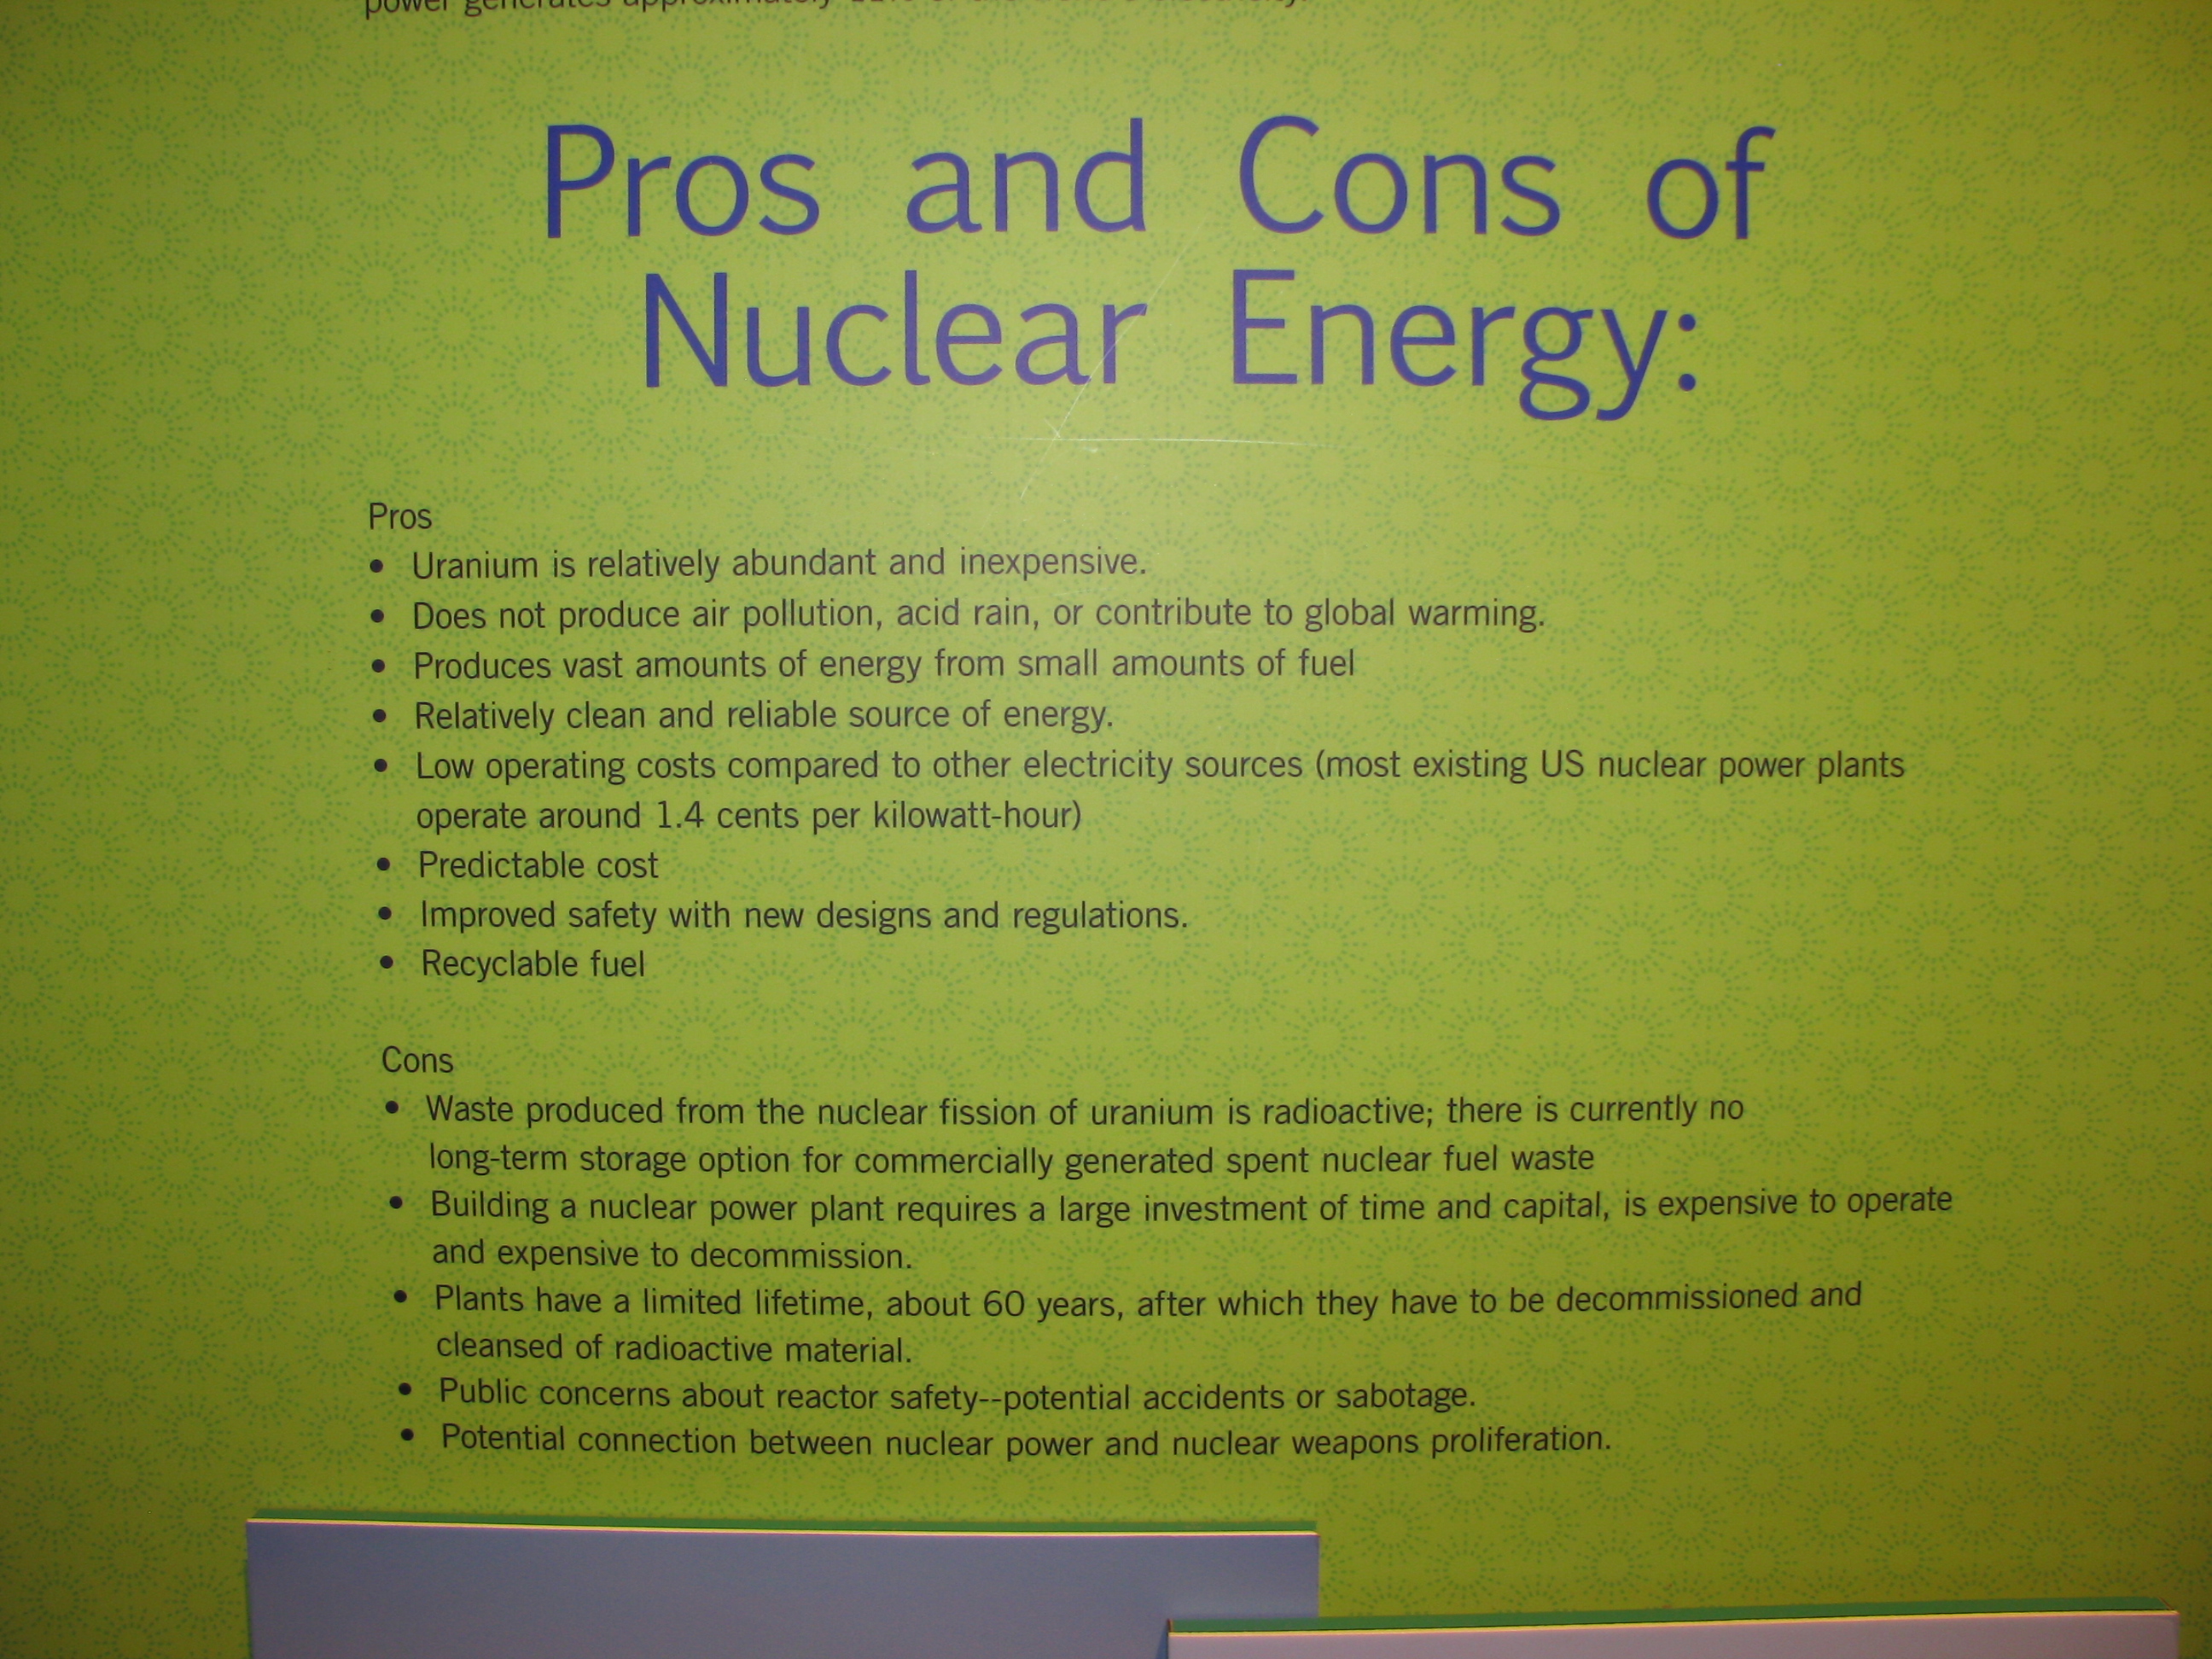 Essay on nuclear energy